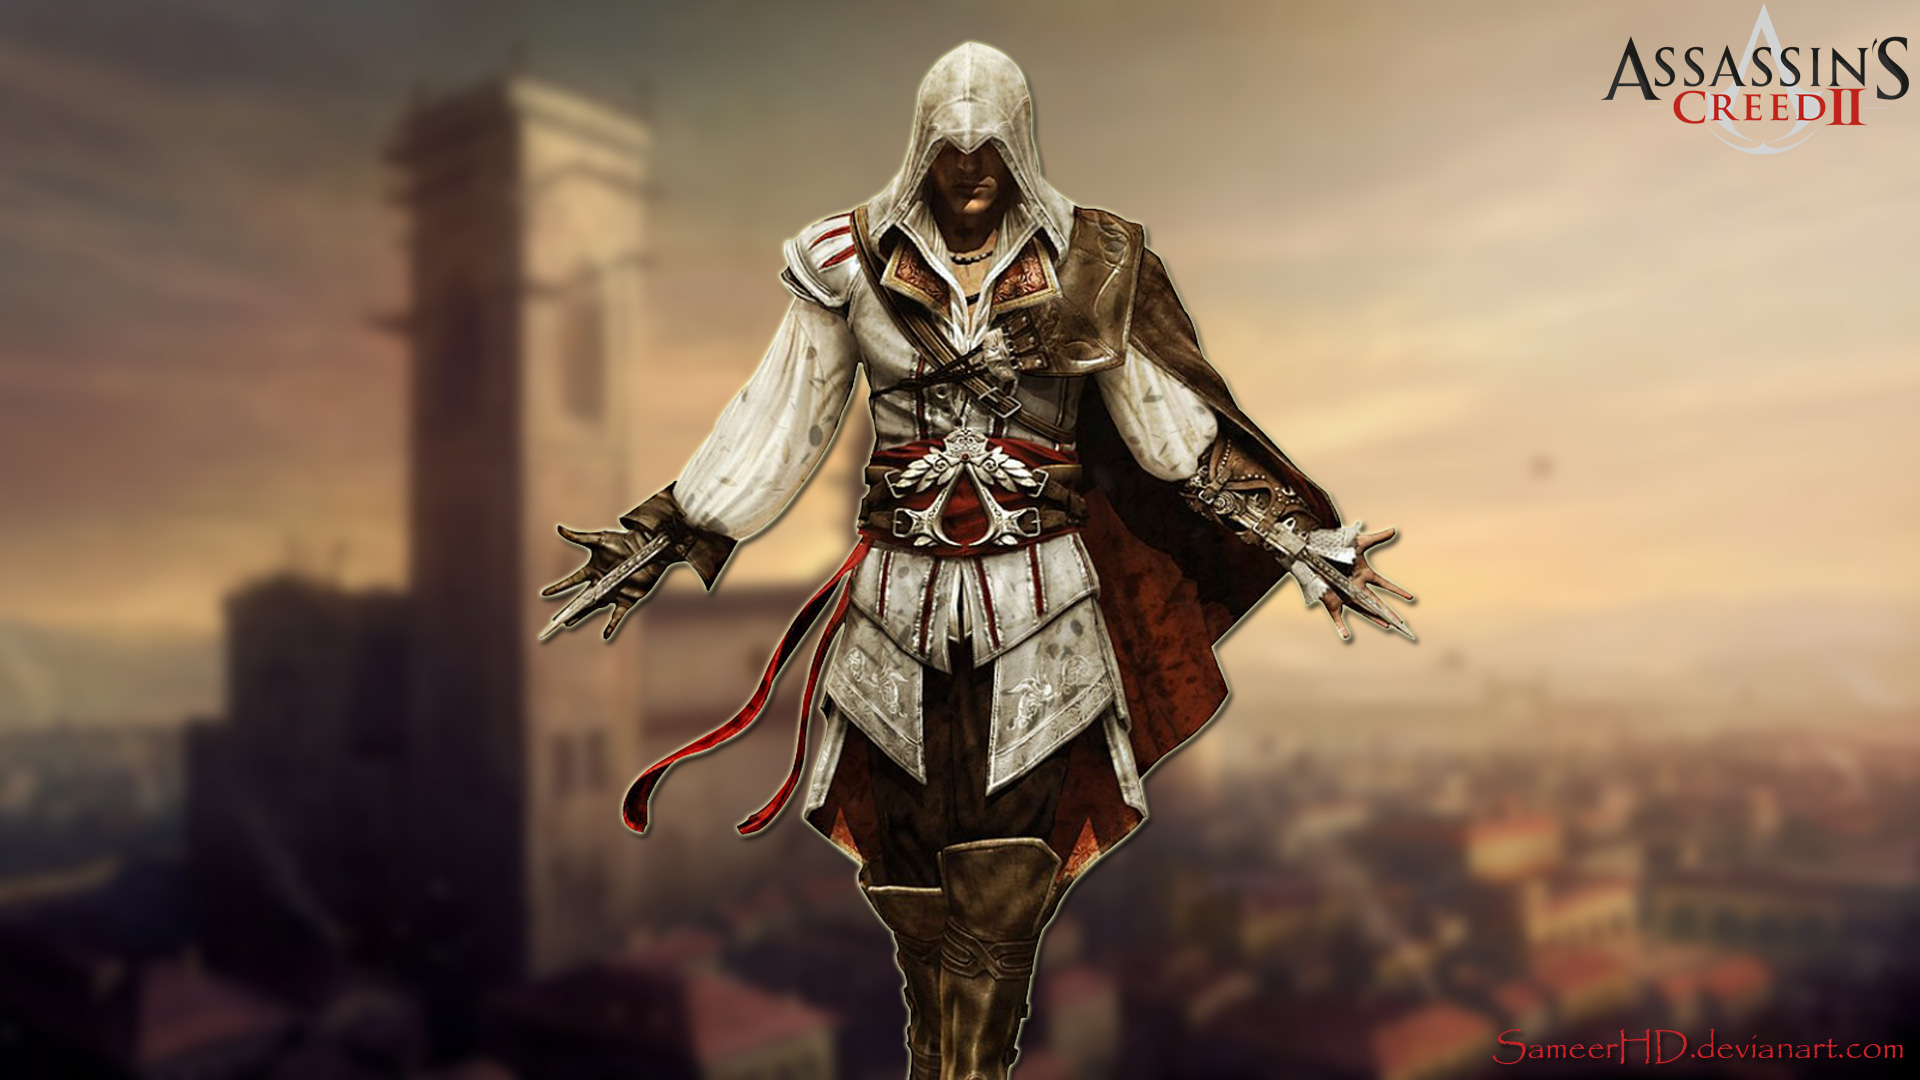 7 sát thủ vĩ đại nhất trong suốt lịch sử Assassin's Creed (P1)